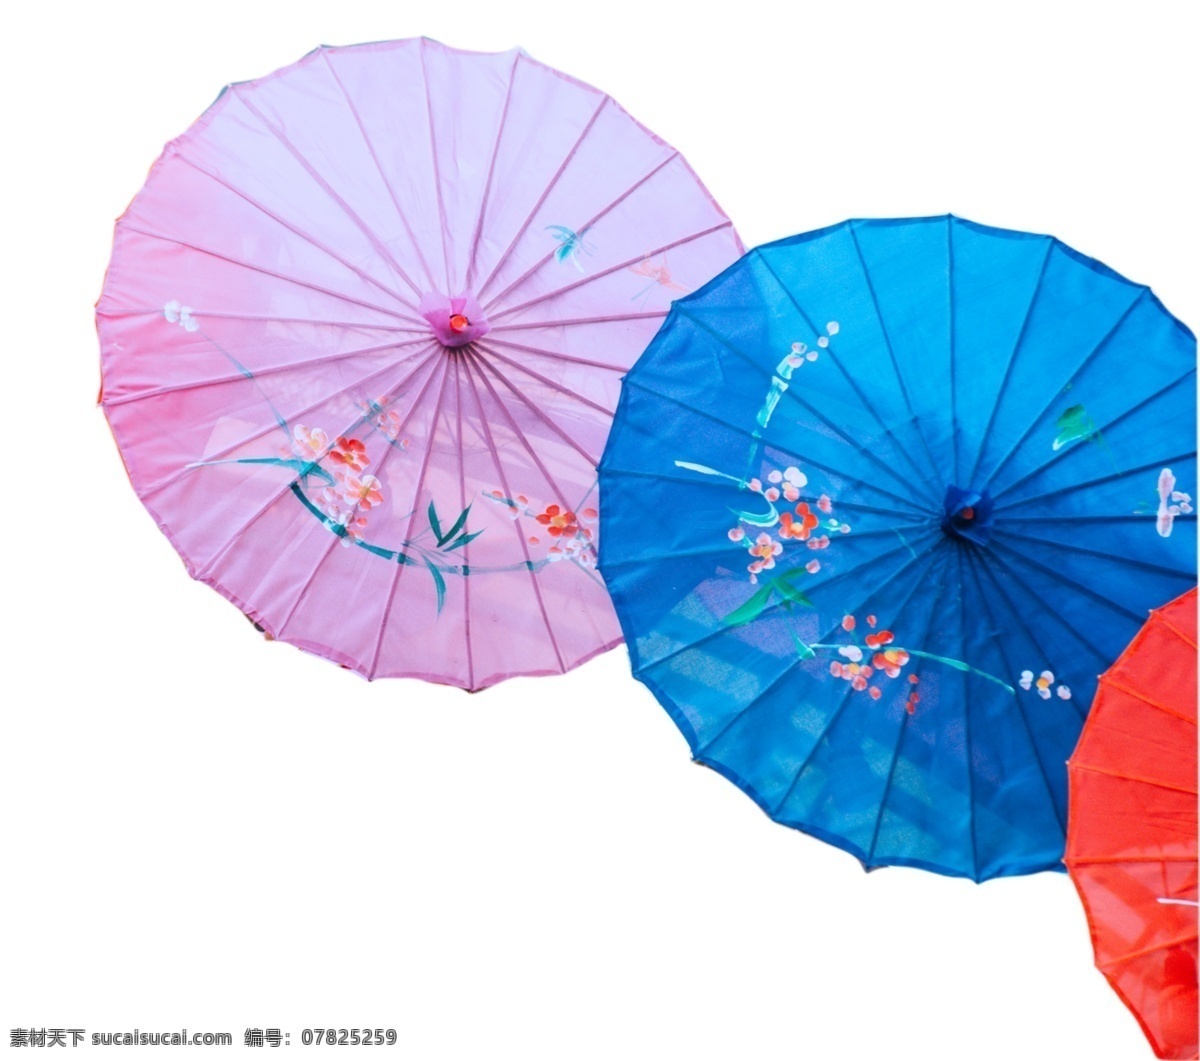 高端 大气 印花 雨伞 遮阳挡雨 五颜六色 简约大方 携带方便 颜色绚丽 上档次 不失优雅